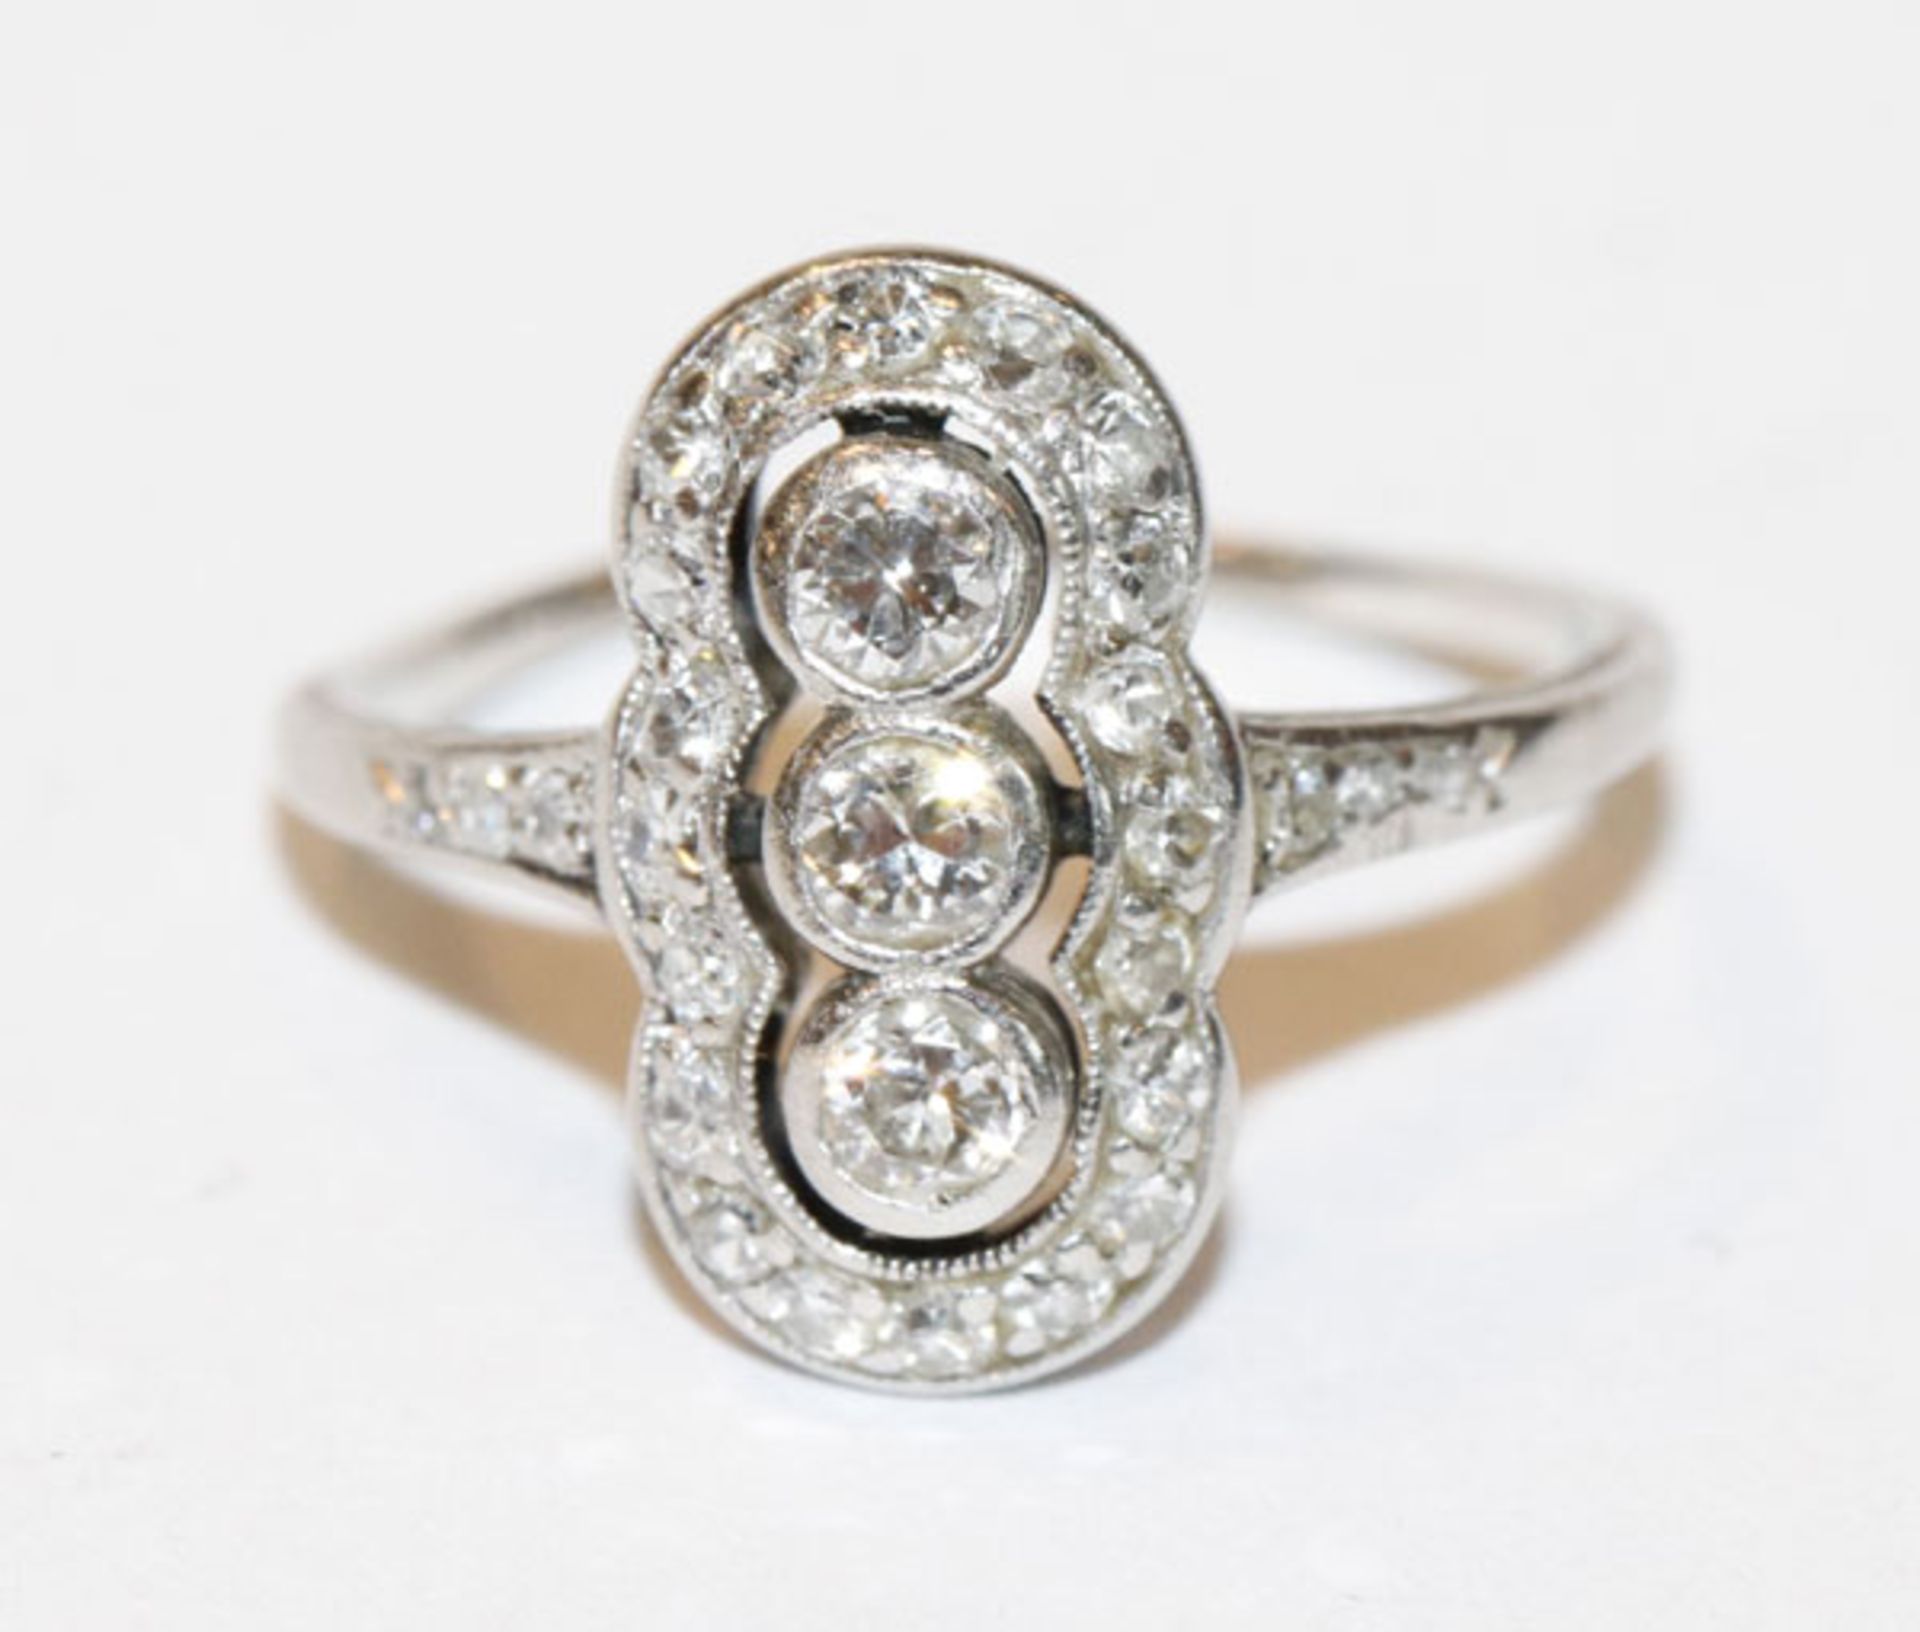 14 k (geprüft) Weißgold Ring mit Diamanten, feine Handarbeit, Gr. 49